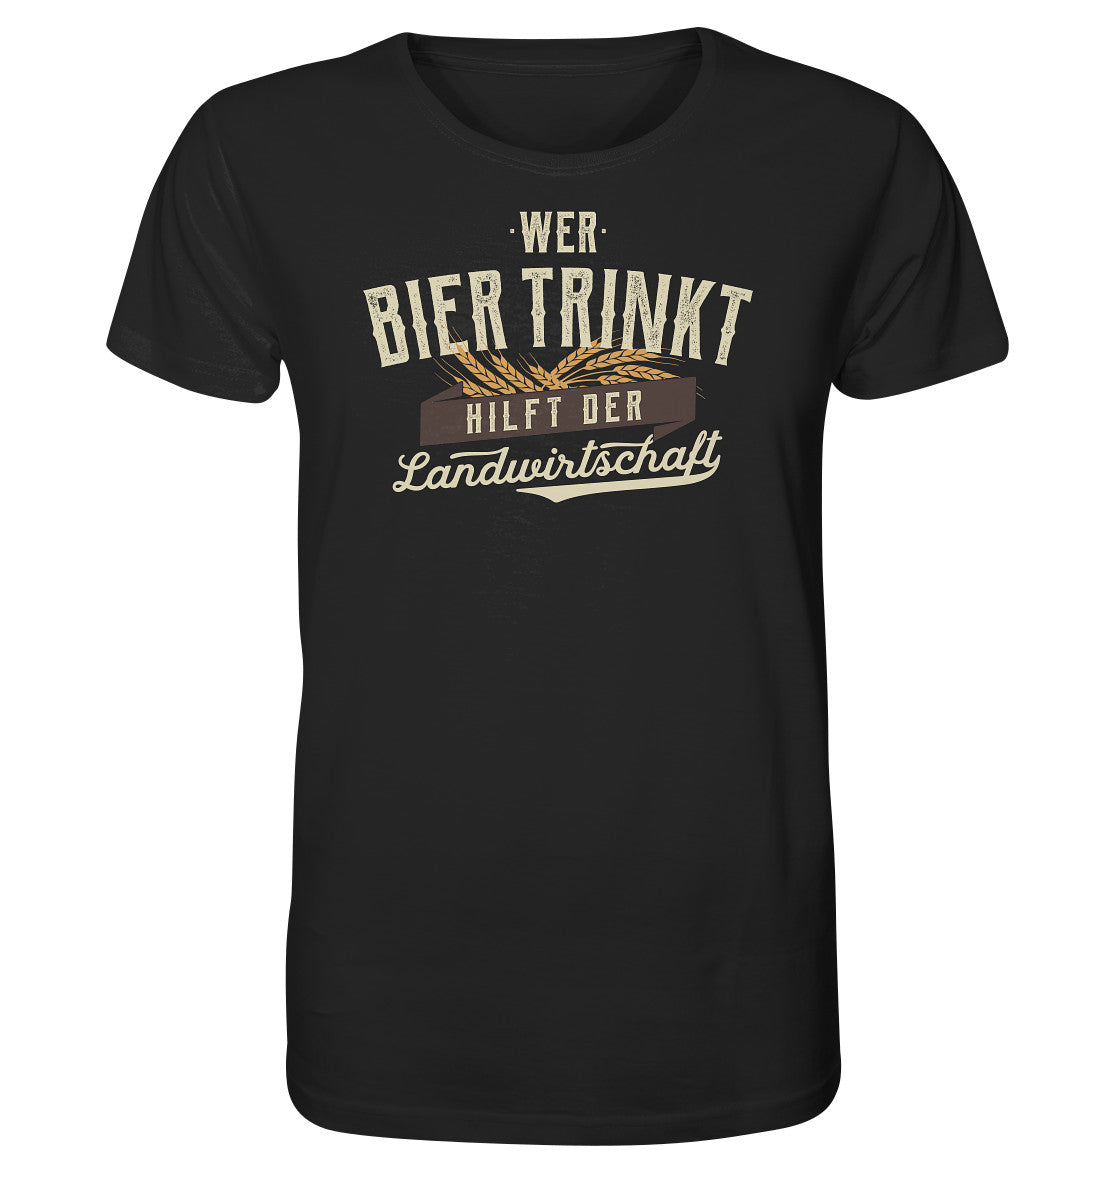 Wer Bier trinkt hilft der Landwirtschaft. Bier Shirt lustig Dorfkram® schwarz